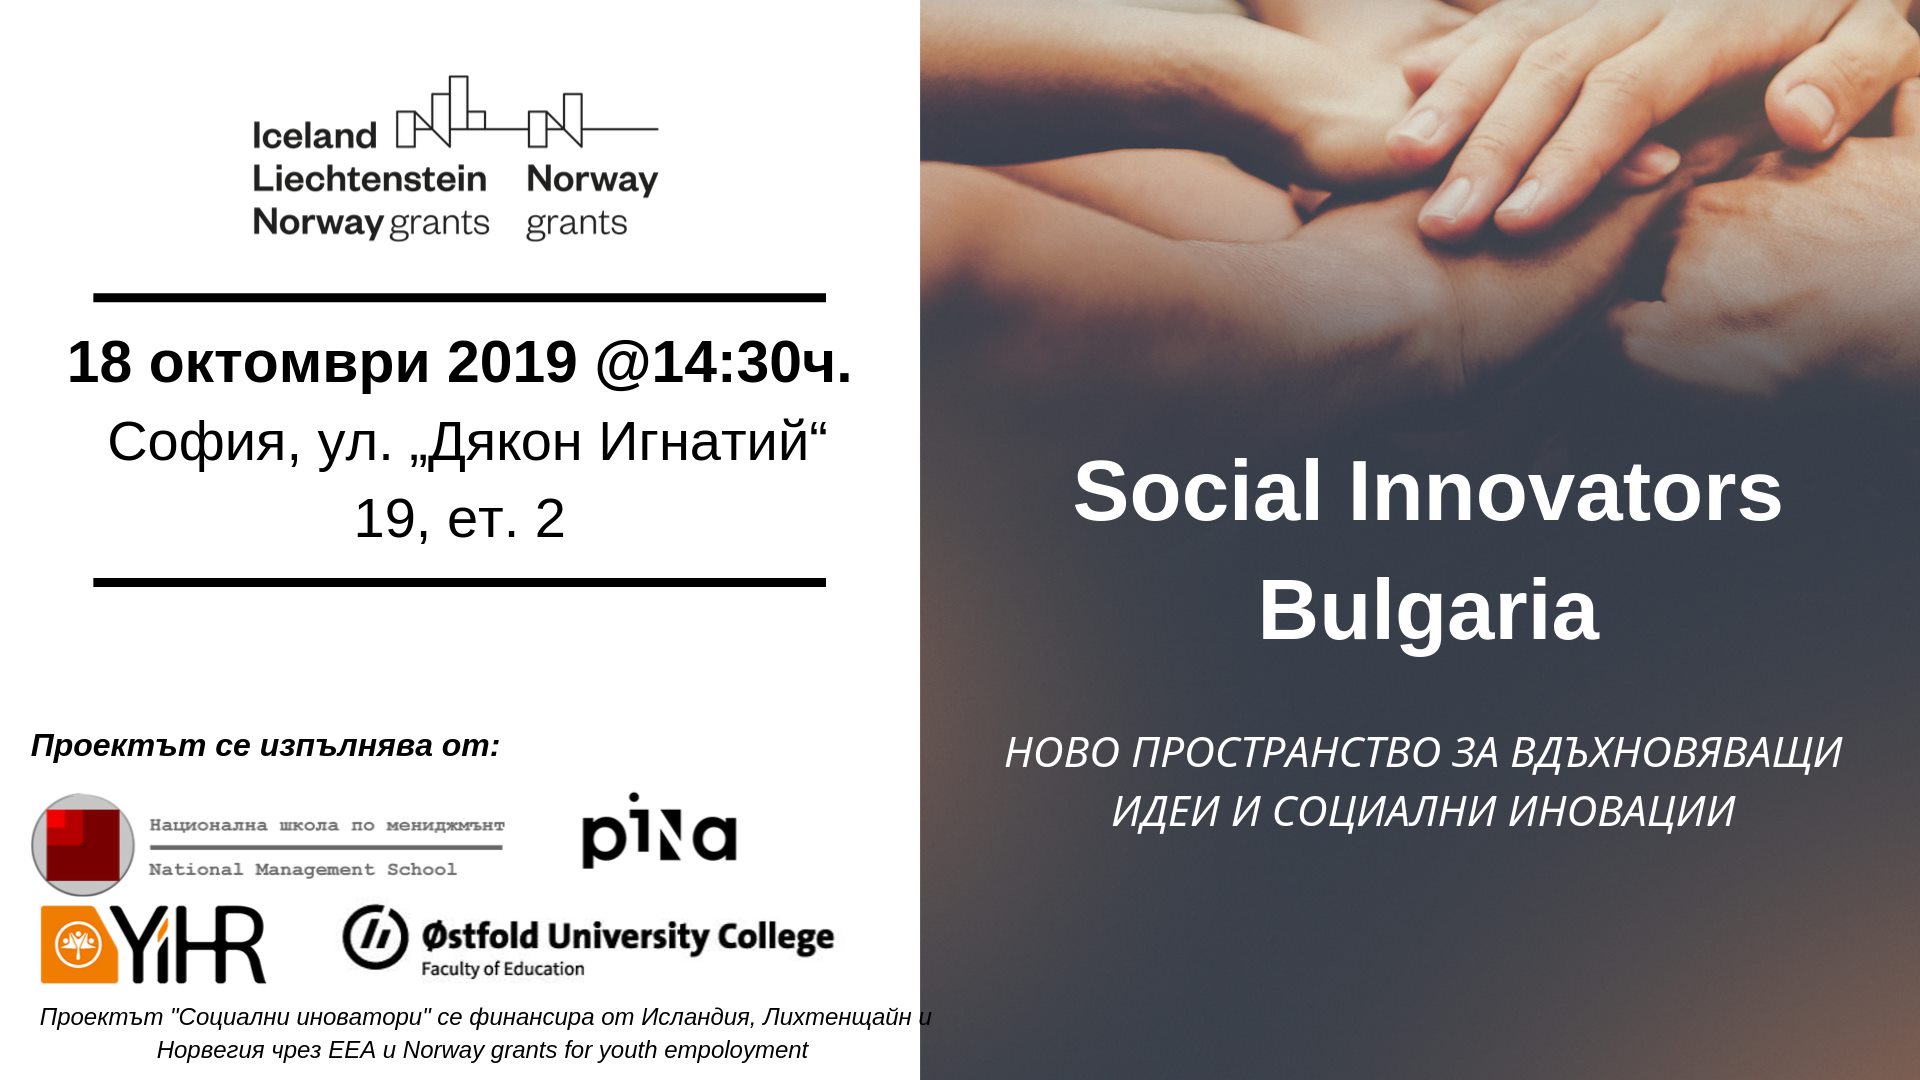 SOCIAL INNOVATORS БЪЛГАРИЯ - Ново пространство за вдъхновяващи идеи и социални иновации